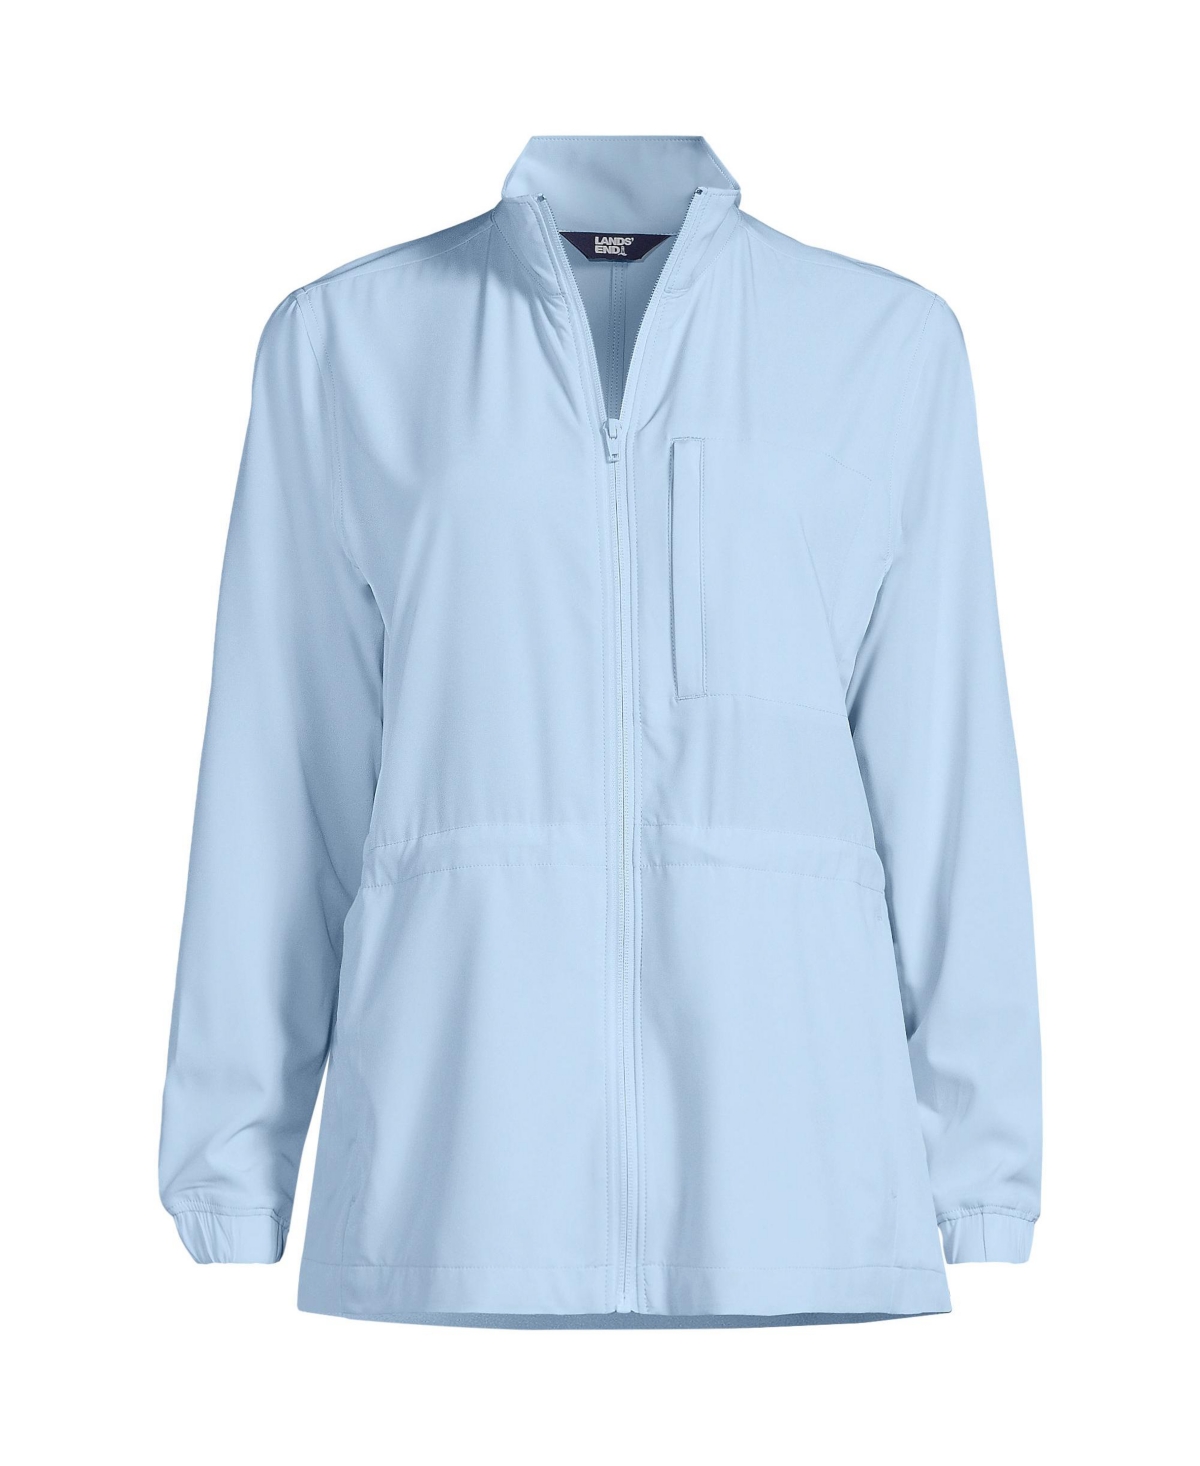 Women's Performance Packable Full Zip Shirt - Soft blue haze